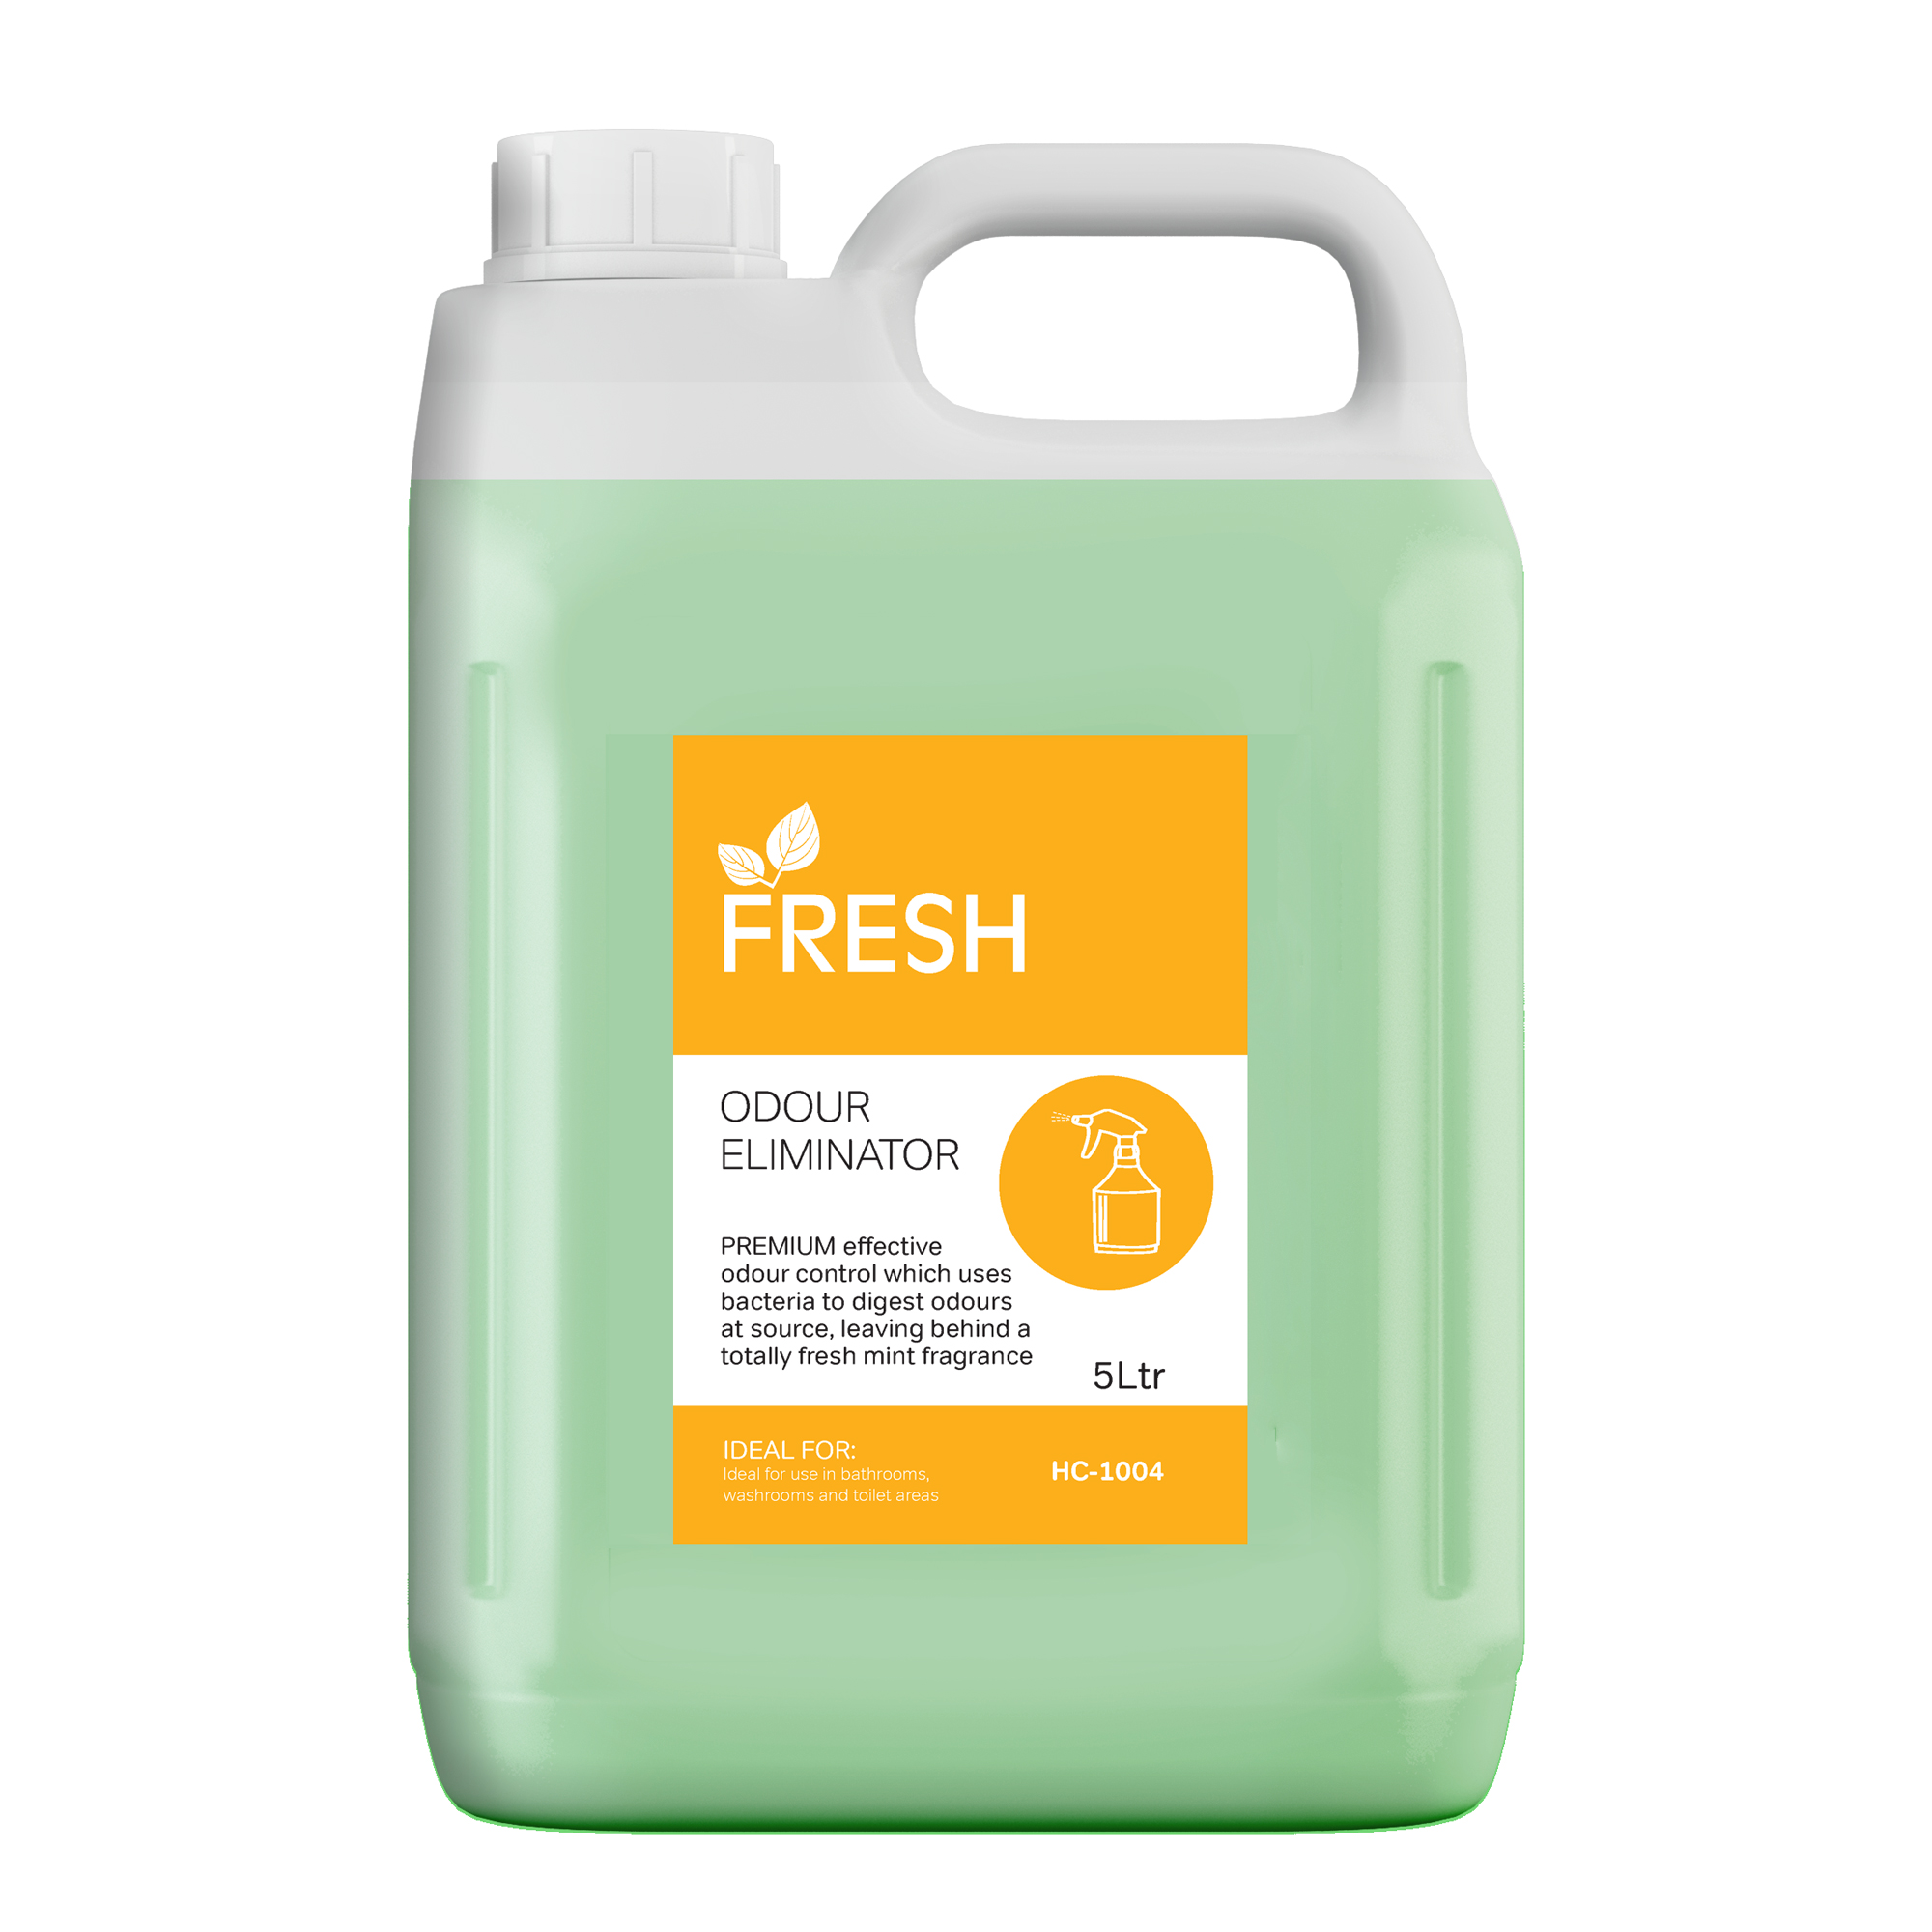 Odour Eliminator Air Freshener - 5 Litre